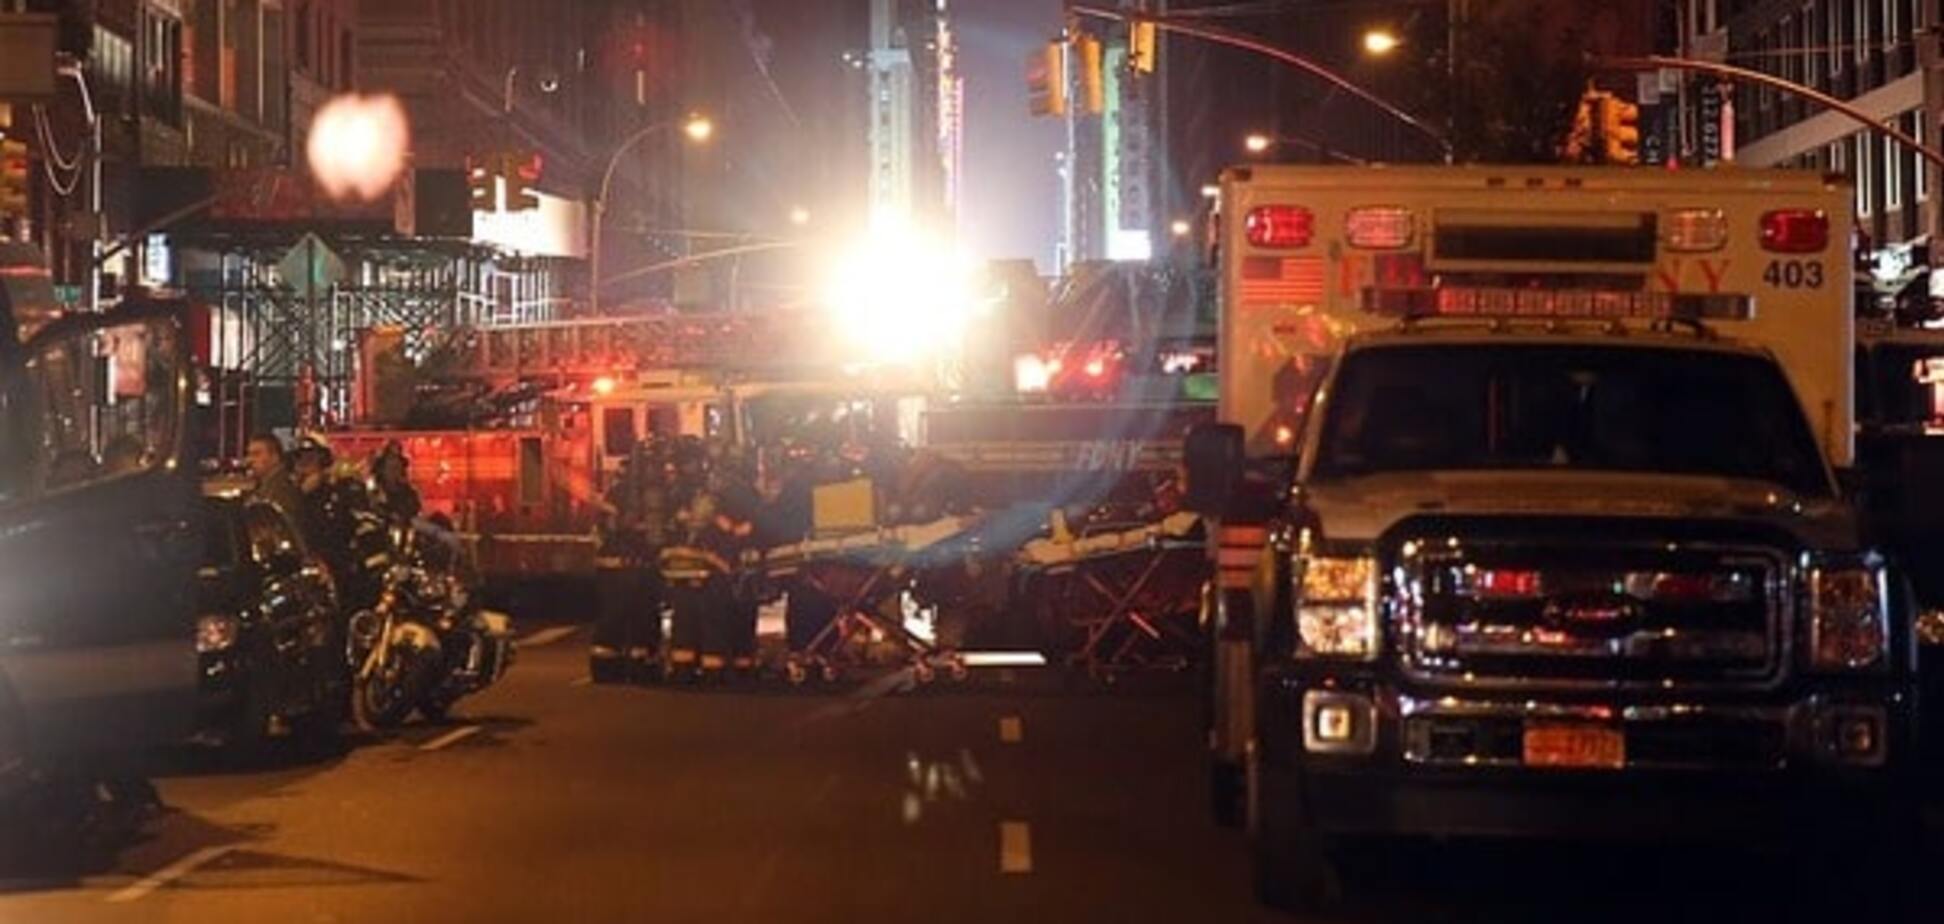 СМИ: ранения пострадавших в Нью-Йорке указывают на взрыв бомбы